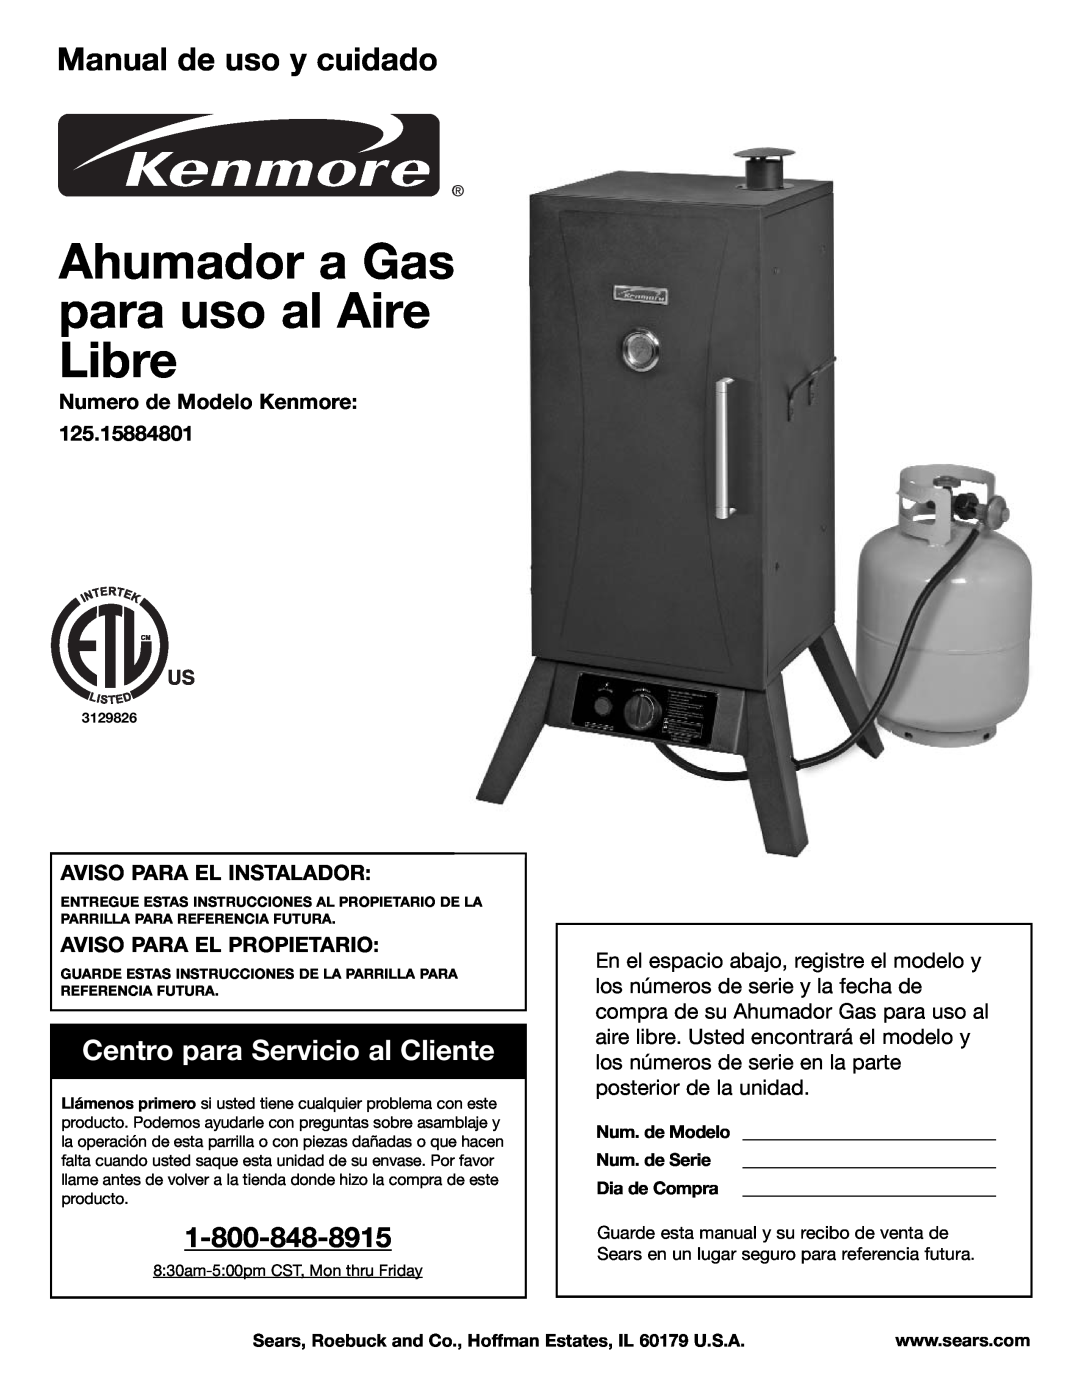 Kenmore 125.15884801 Ahumador a Gas para uso al Aire Libre, Manual de uso y cuidado, Centro para Servicio al Cliente 